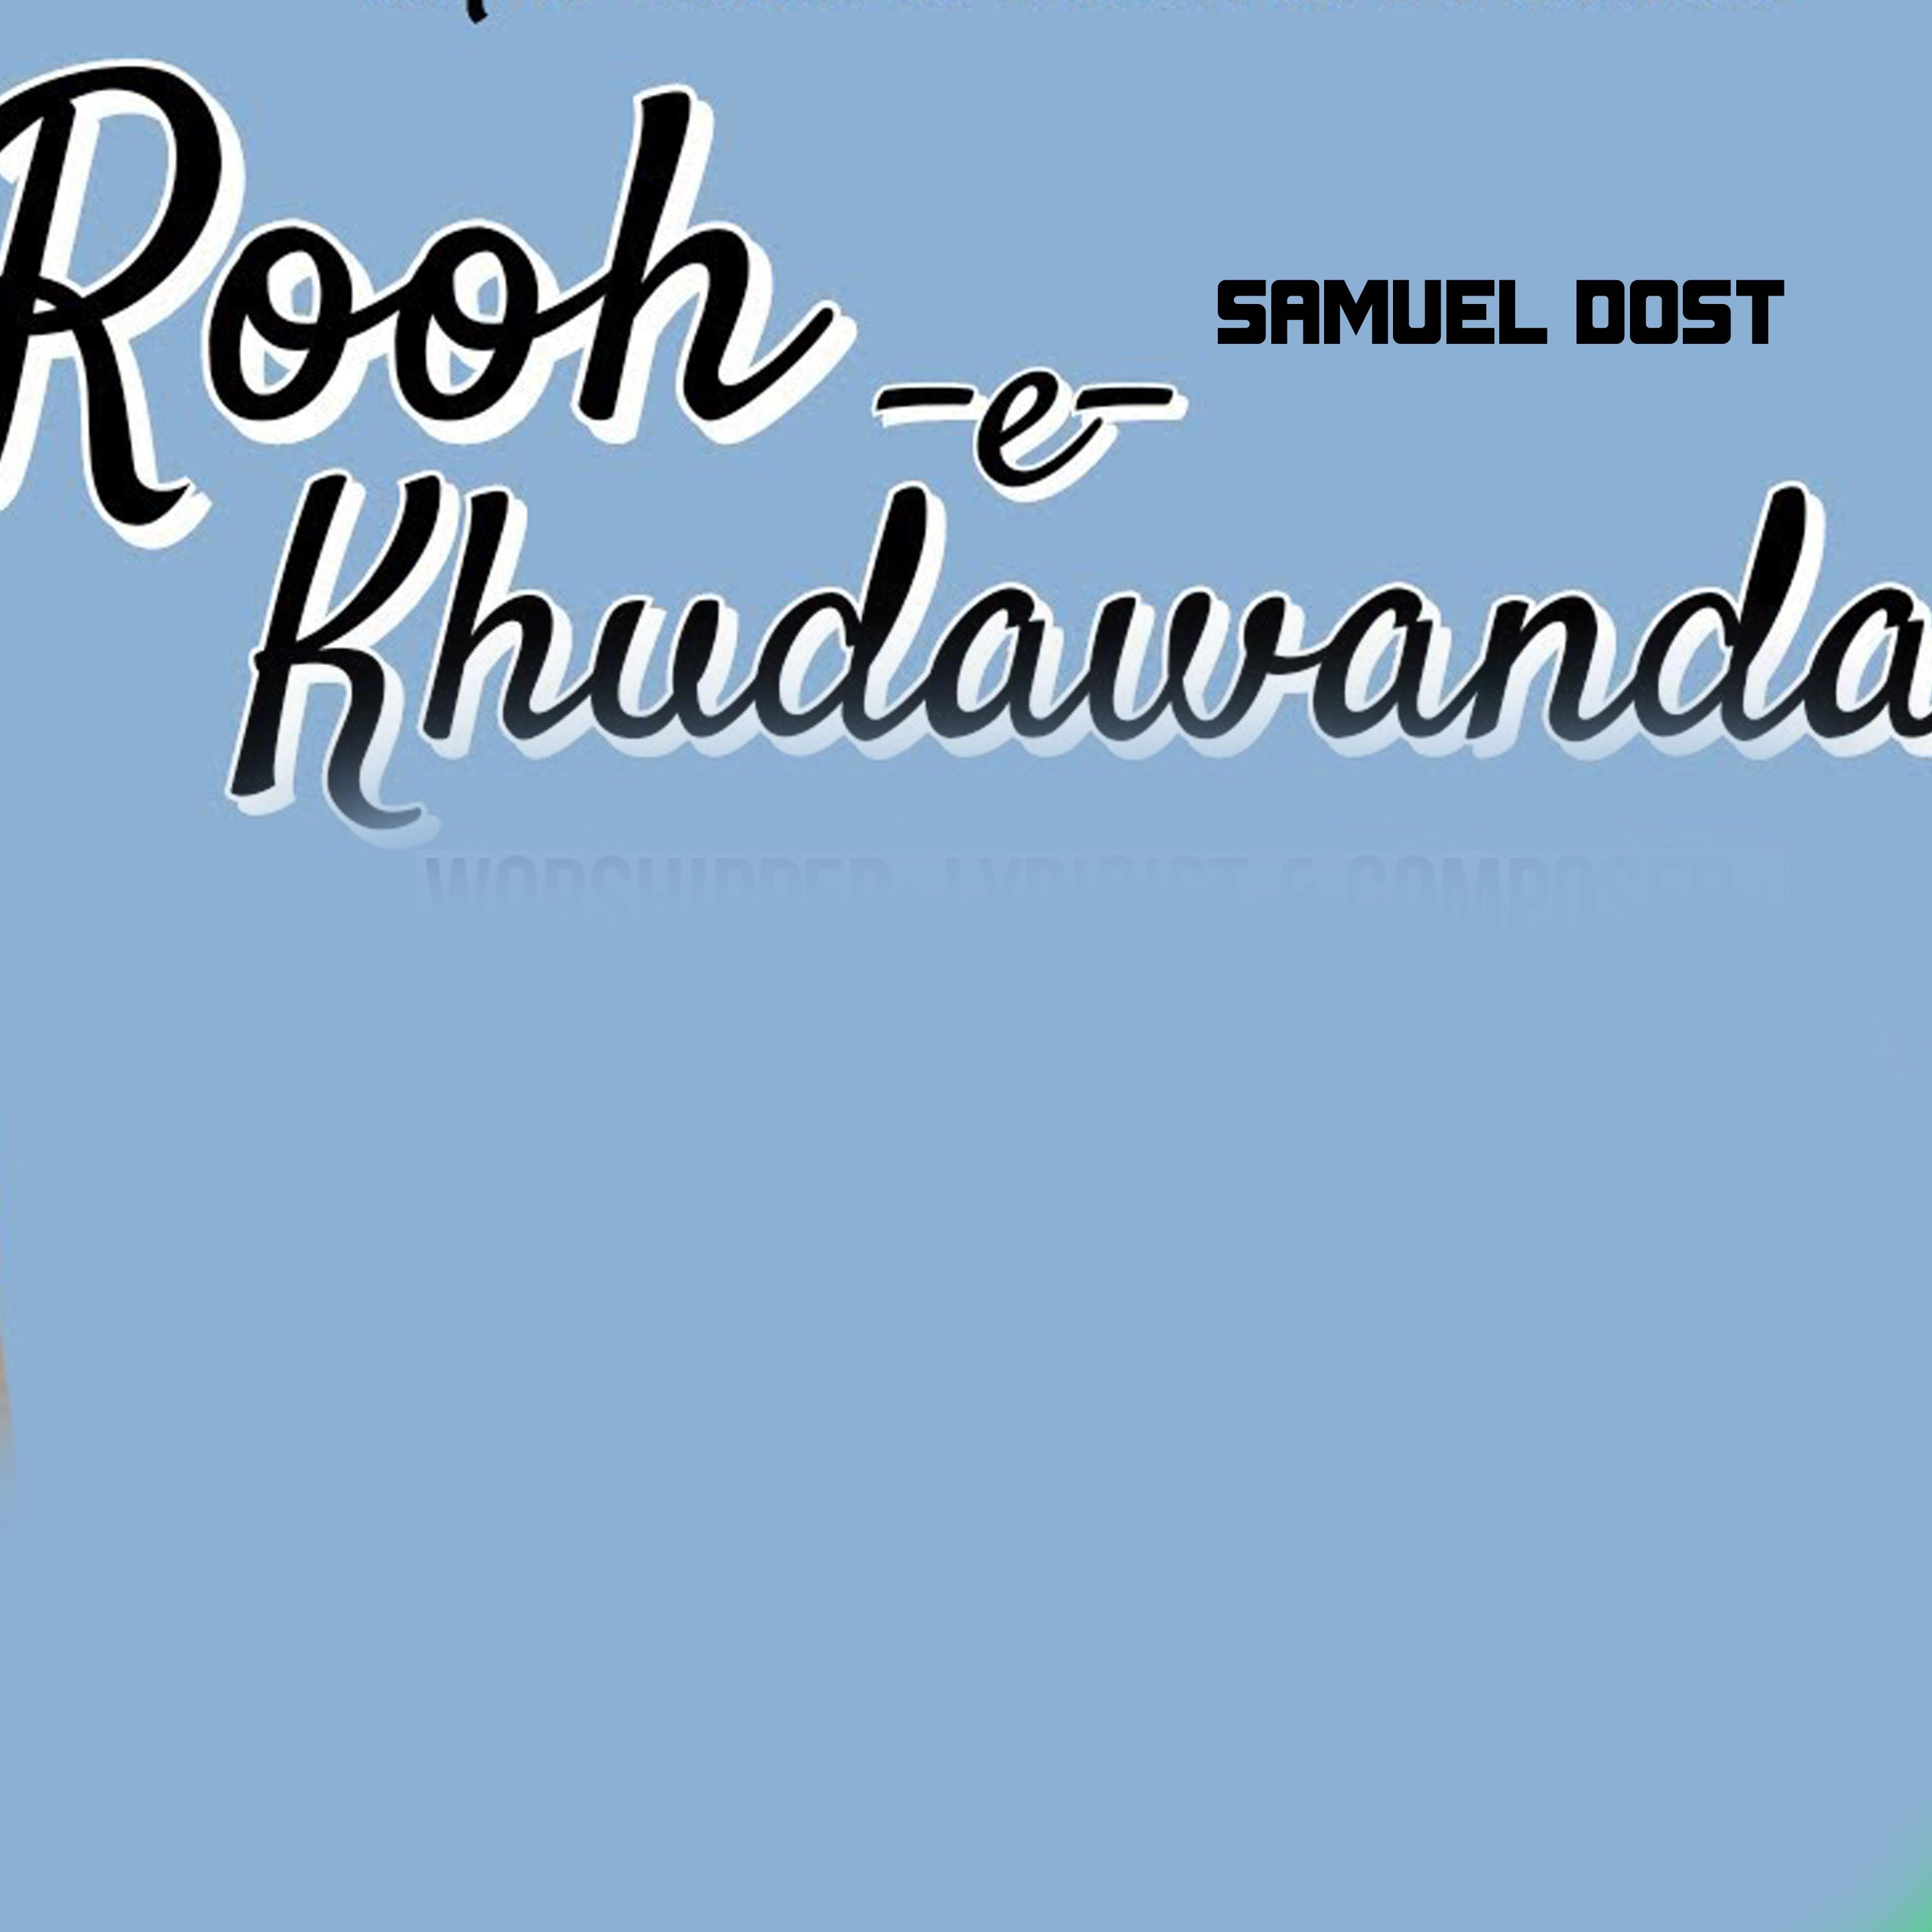 Rooh-e-Khudawanda